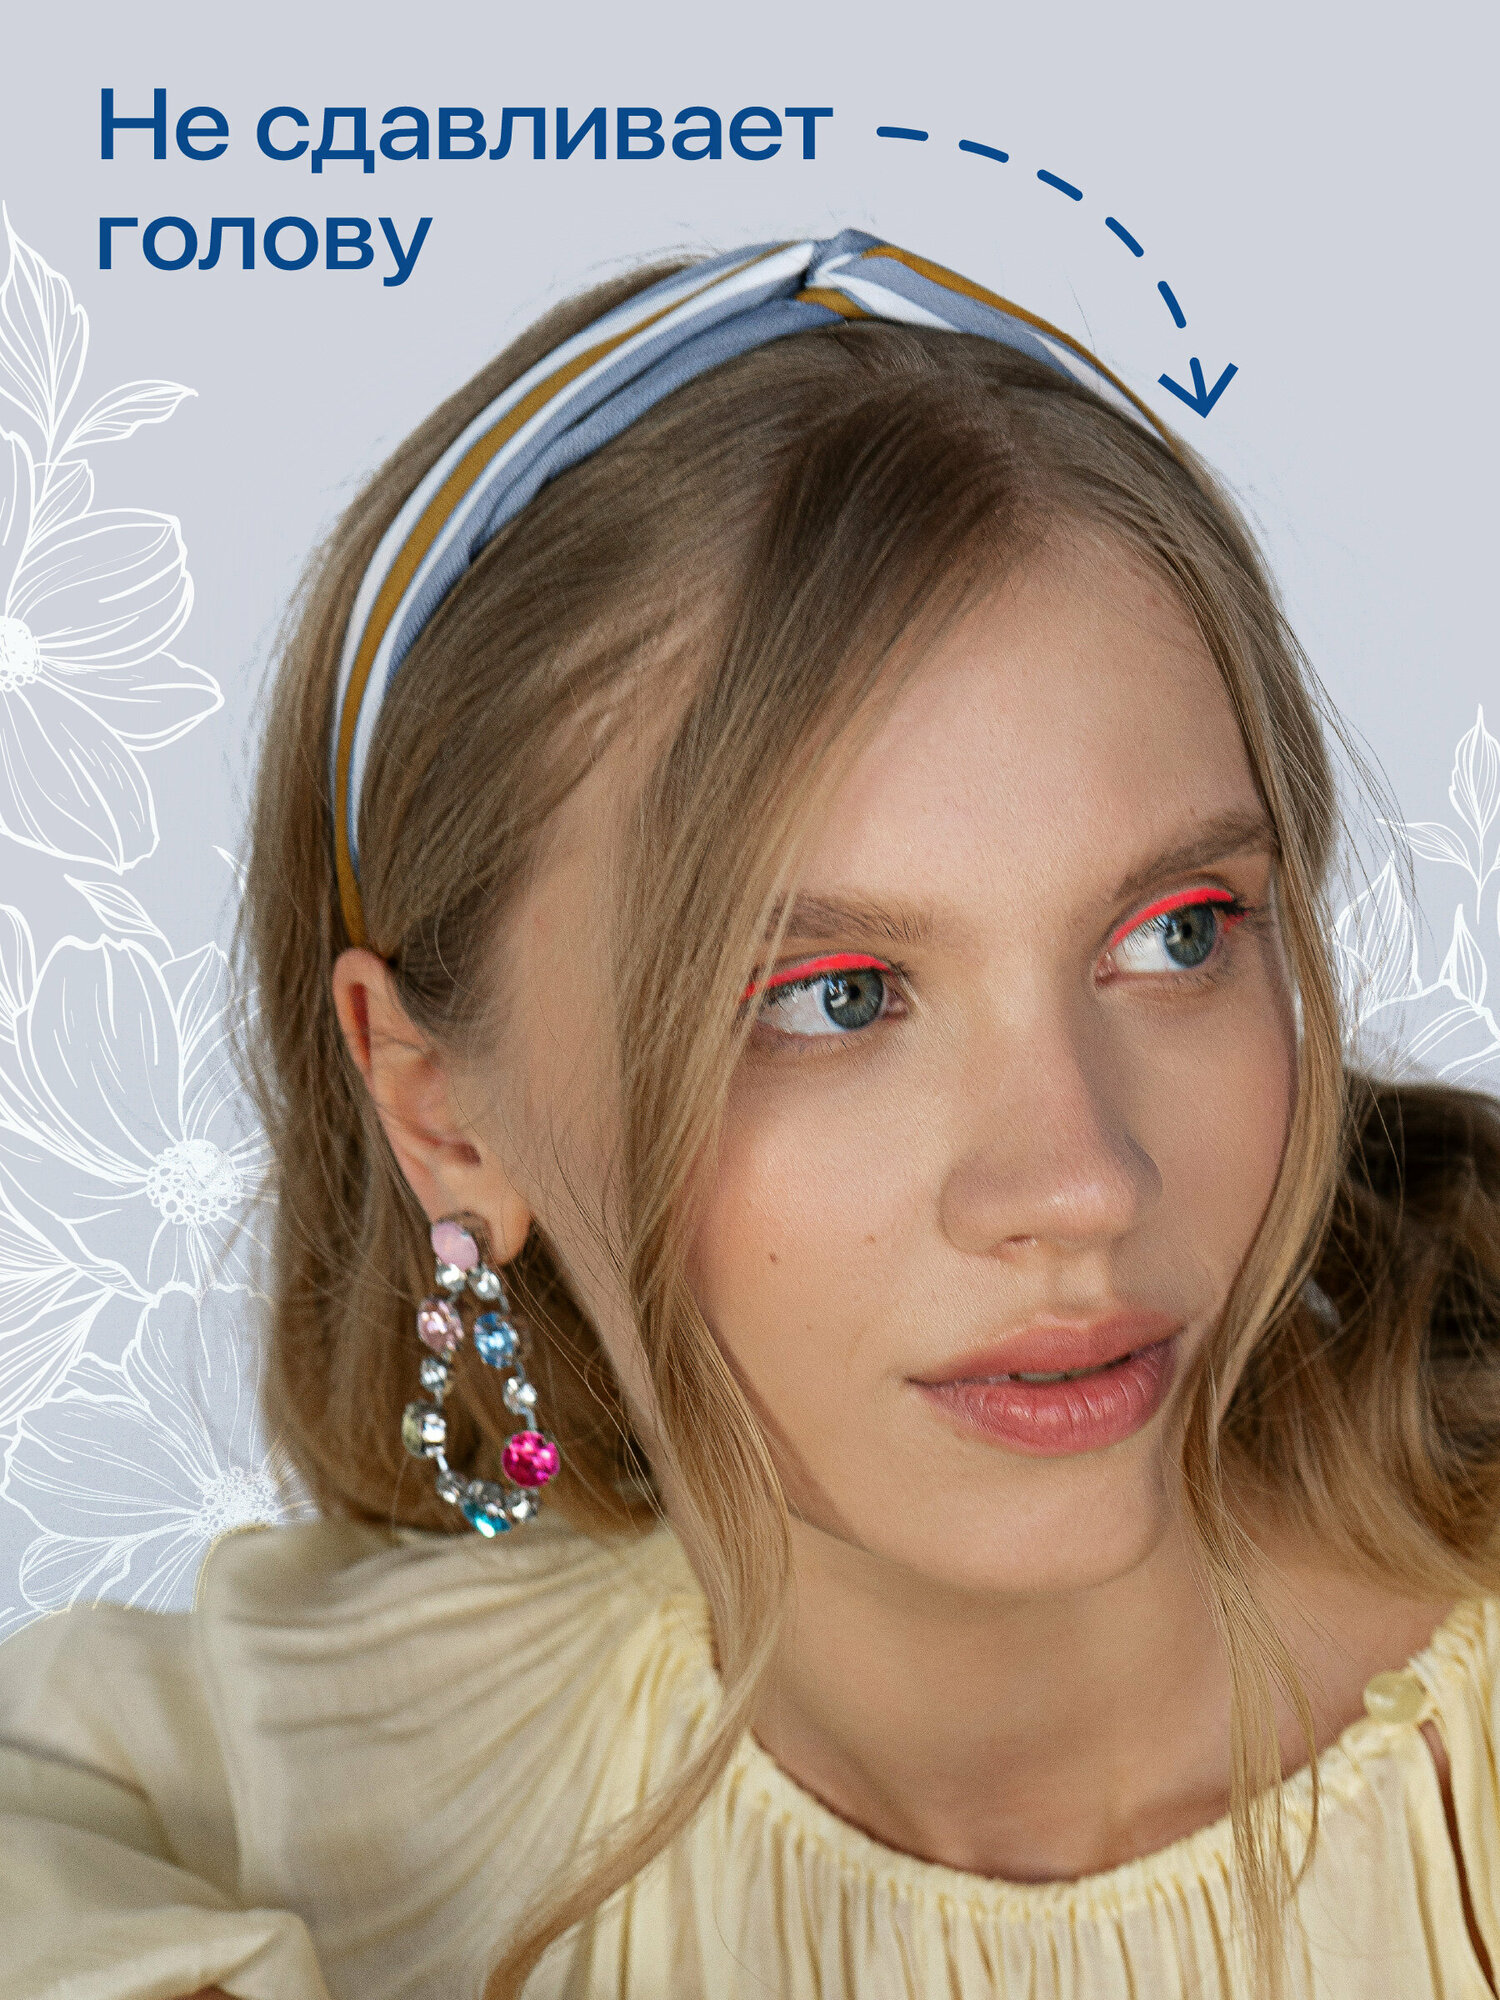 Повязка на голову женская, JewelryMeverly, Солоха летняя для девочки, Детская повязка с рисунком, Ободок для умывания и макияжа